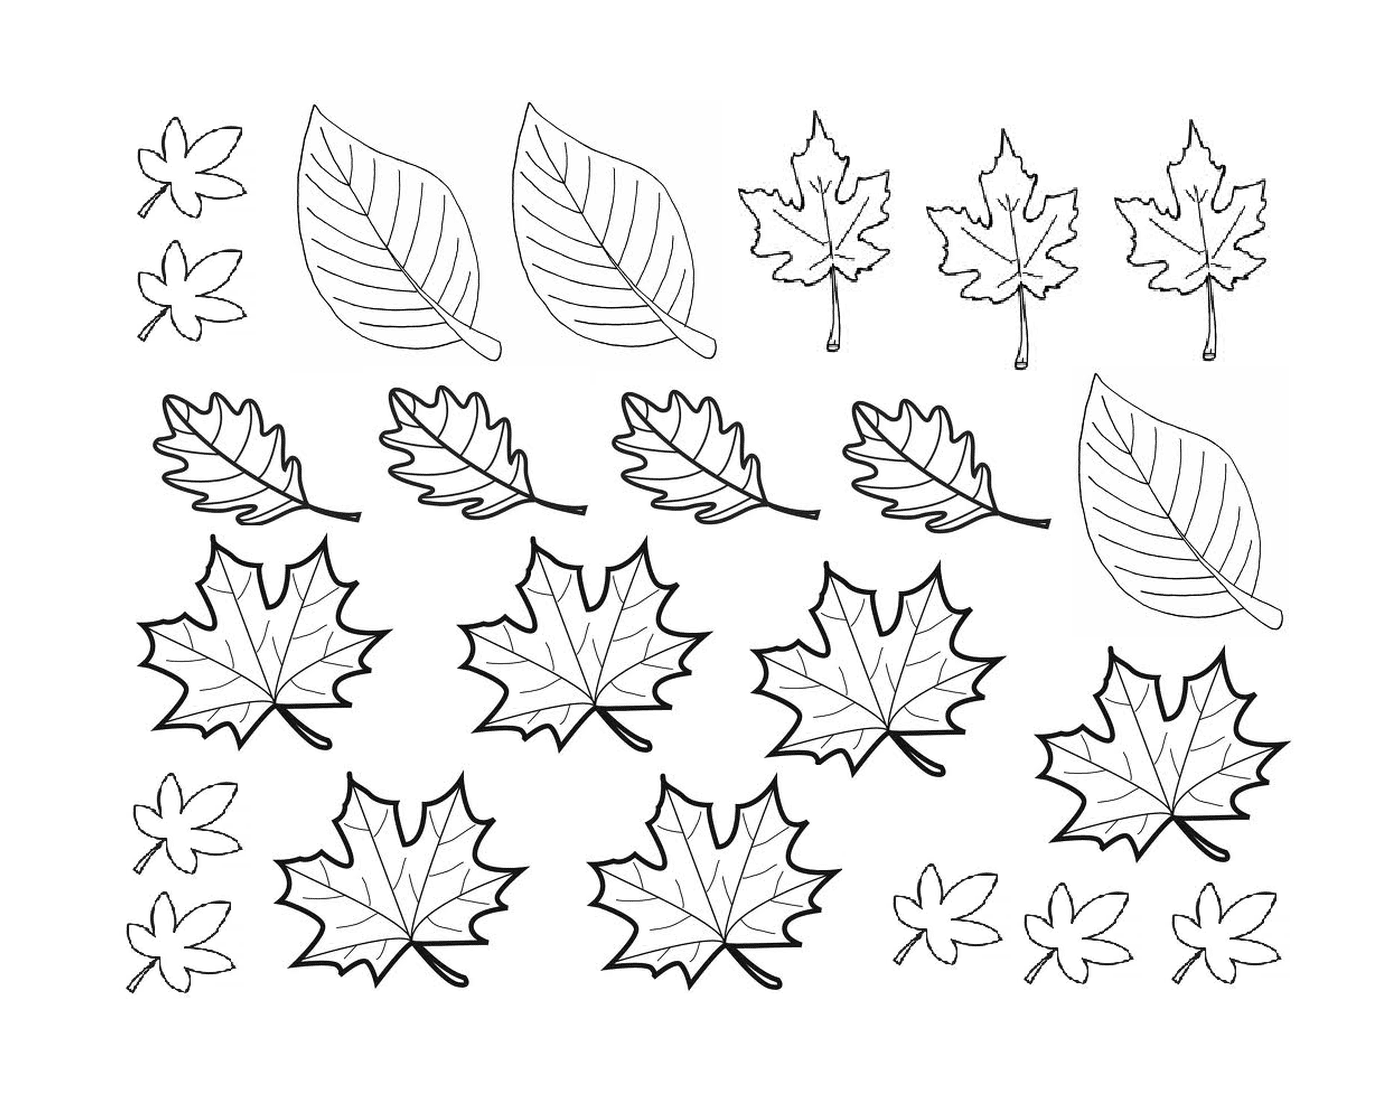   Plusieurs feuilles dessinées d'automne 